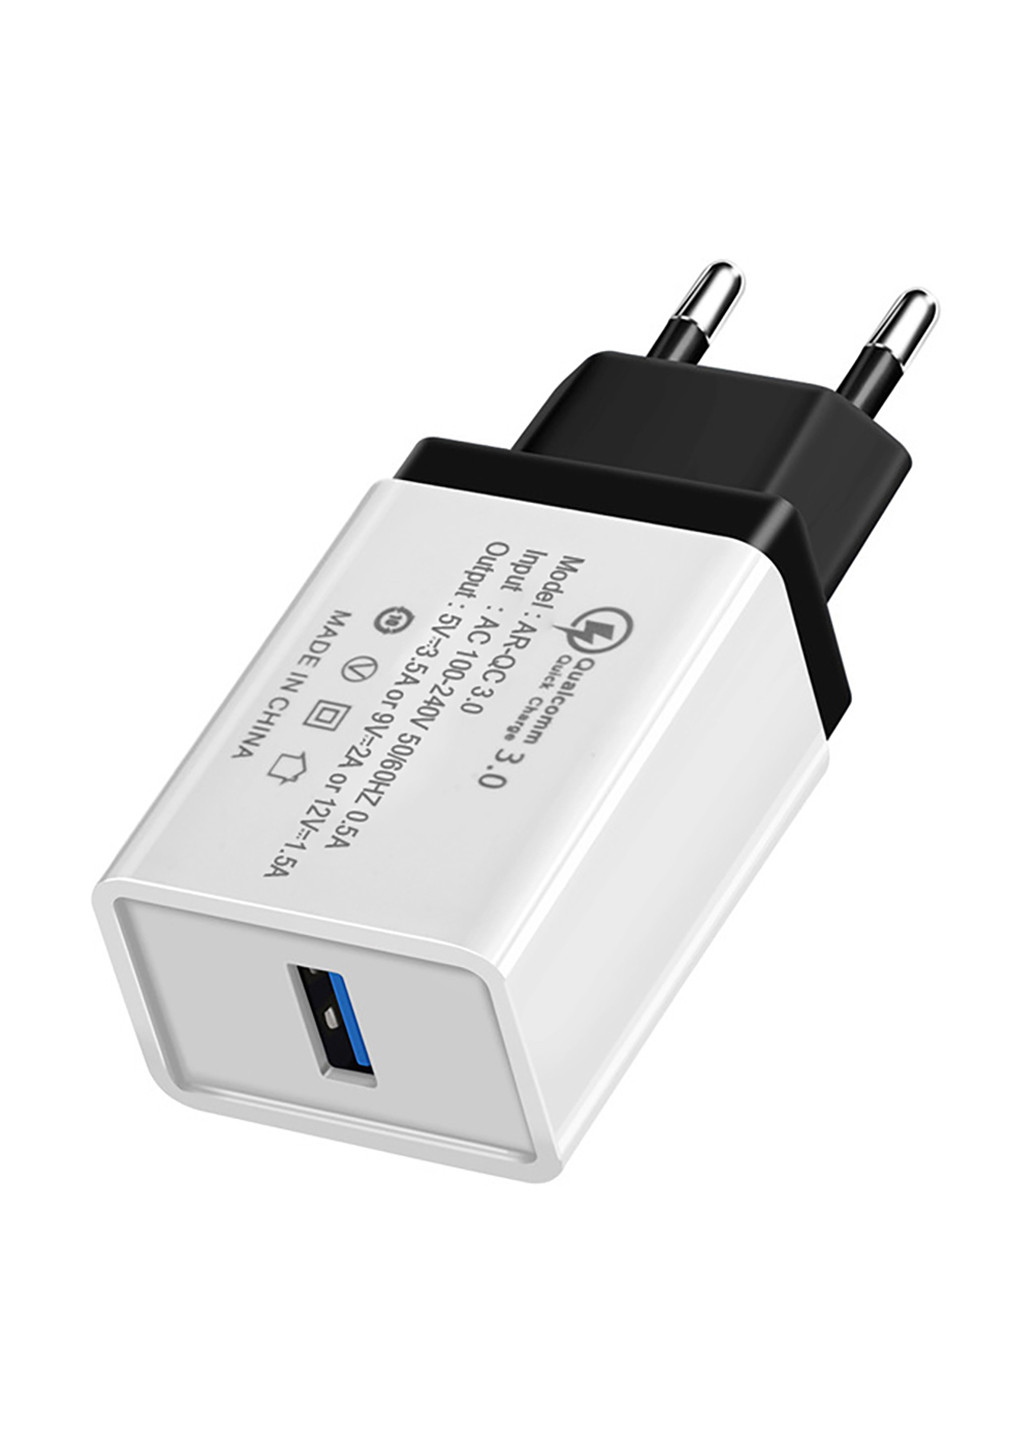 Сетевое зарядное устройство 1 USB, Qualcom 3.0, 3.5A Black XoKo qc-100 (132504984)